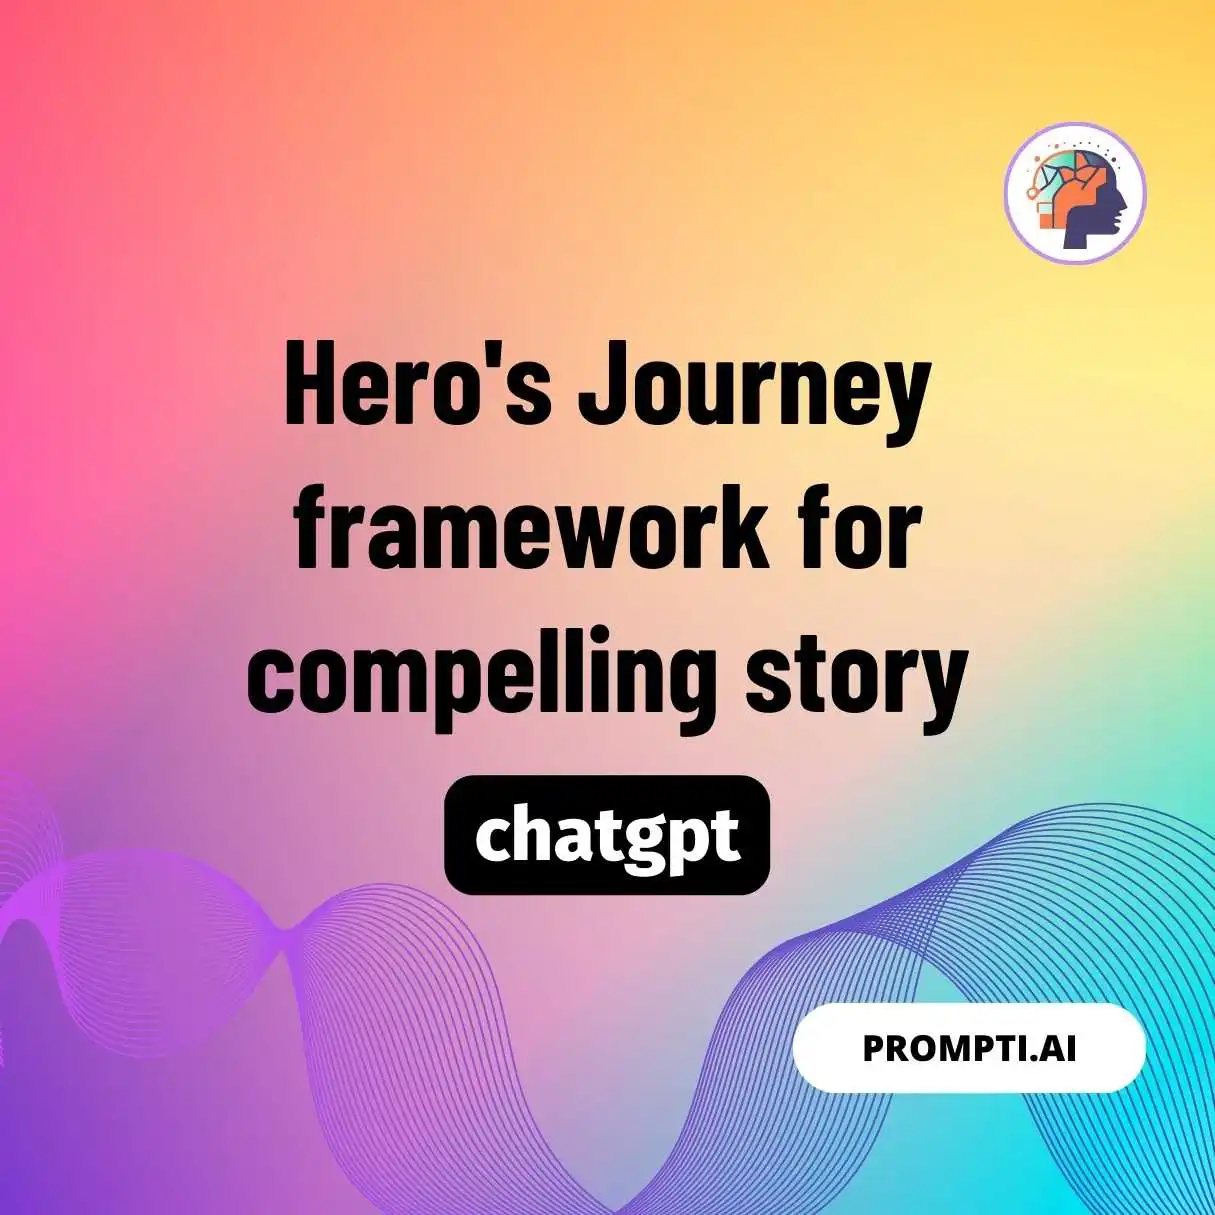 Hero’s Journey framework for compelling story